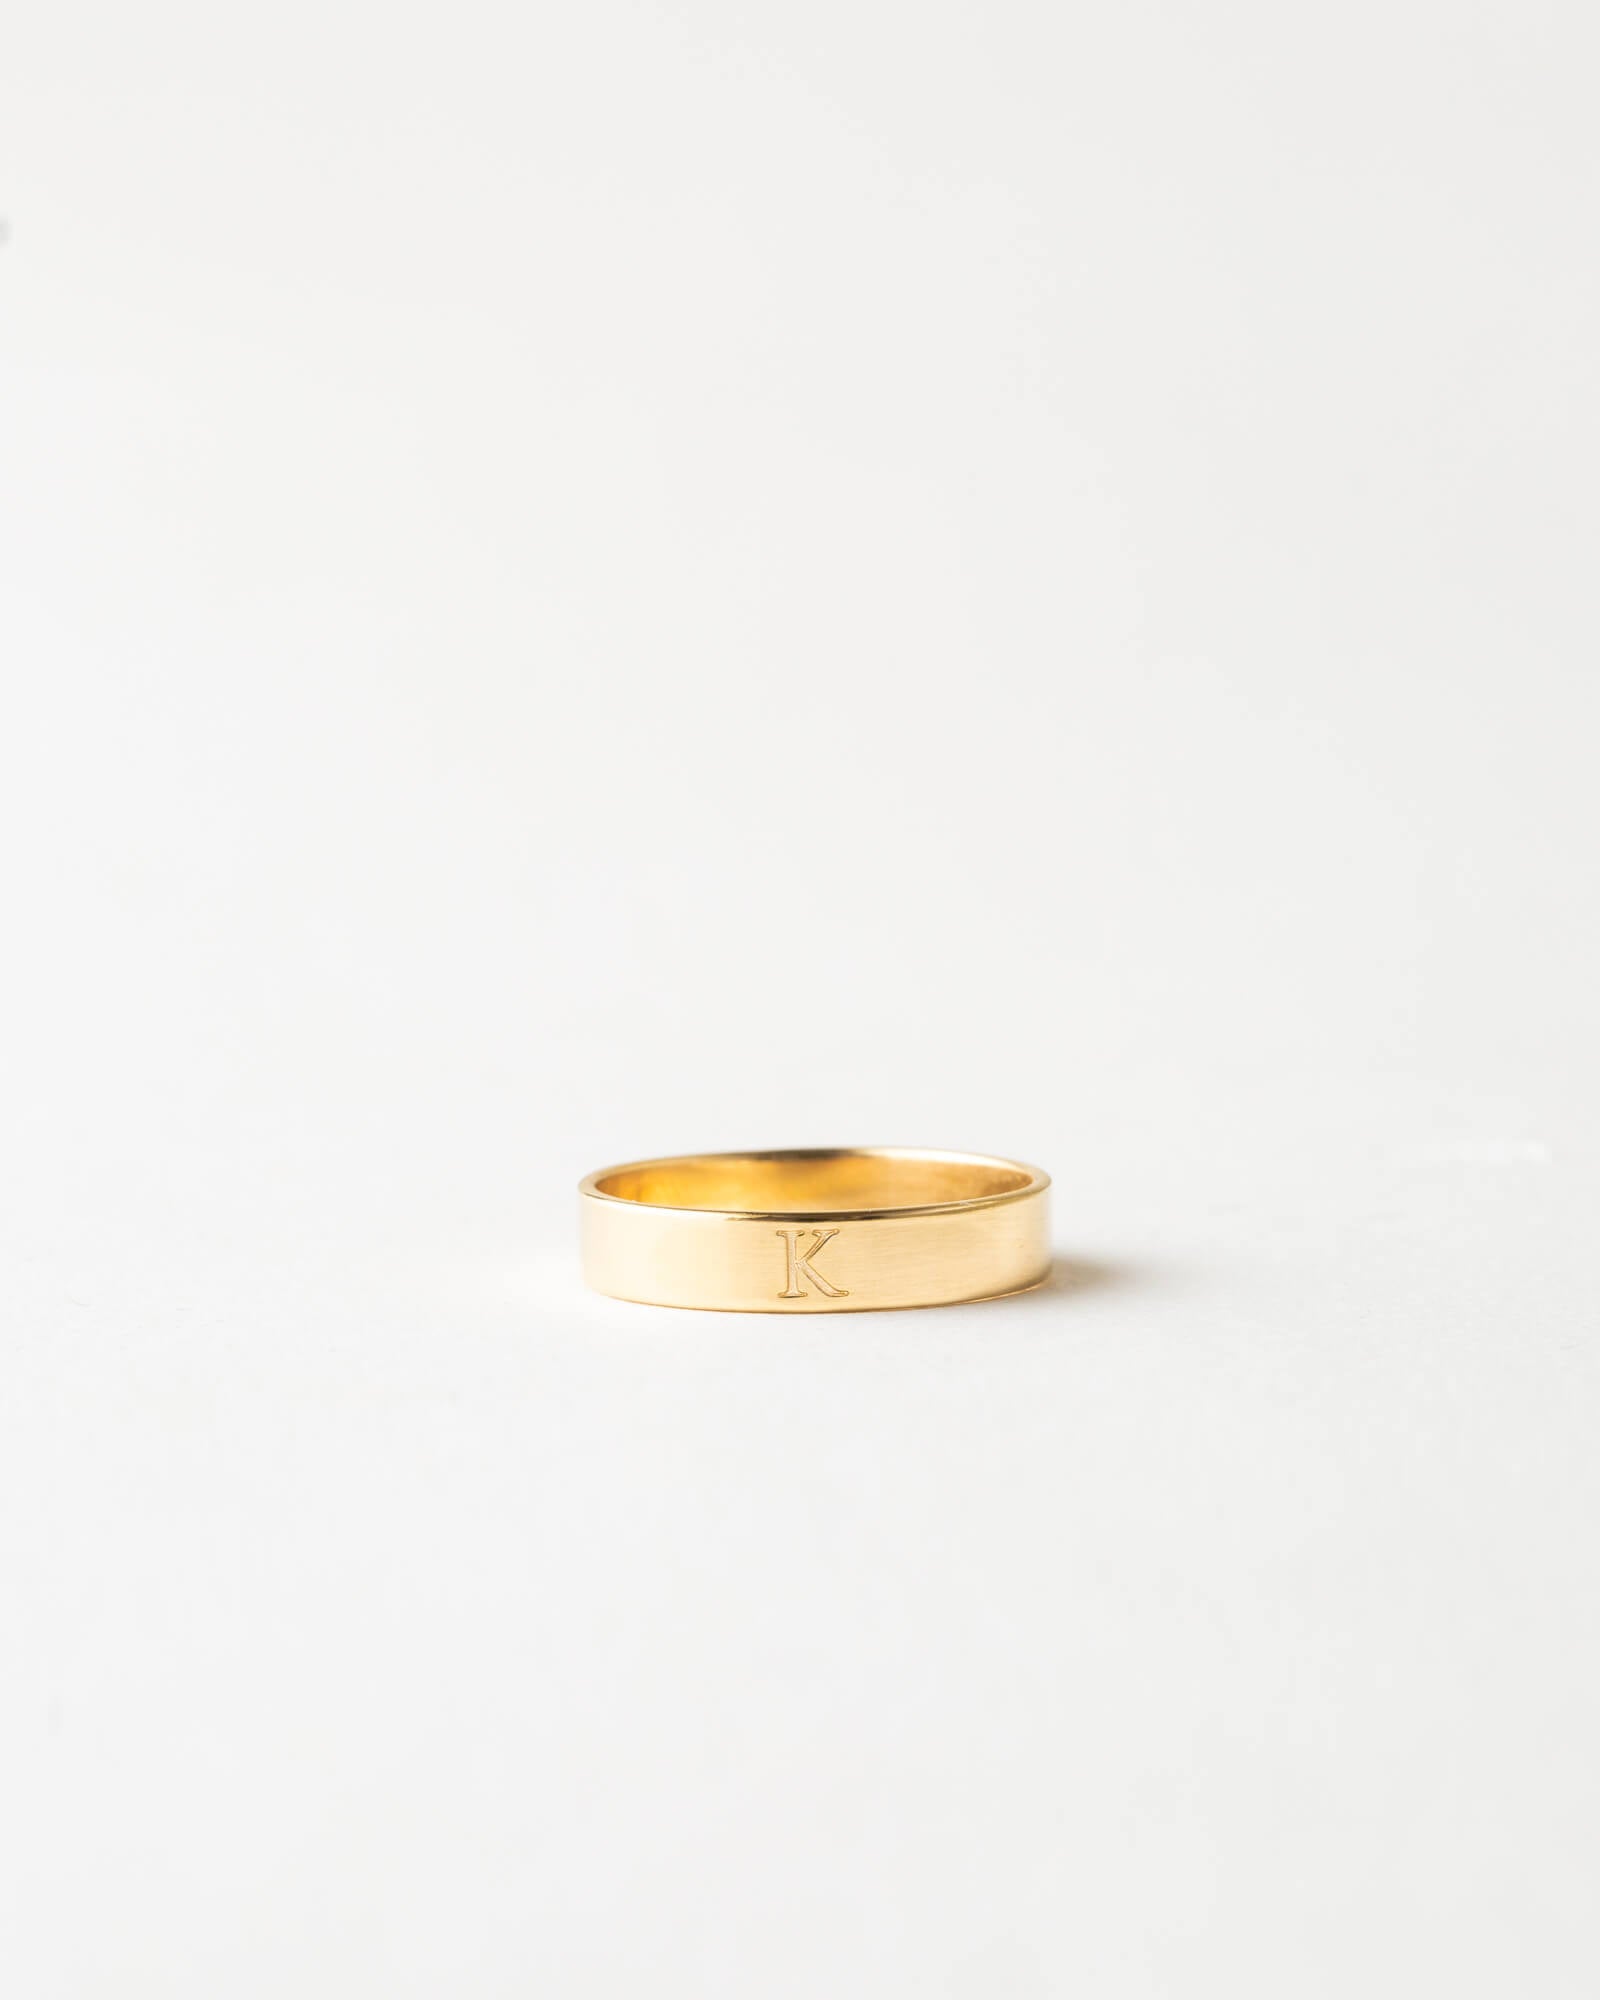 Nanogram ring Louis Vuitton Gold size 6 US in Metal - 32637526